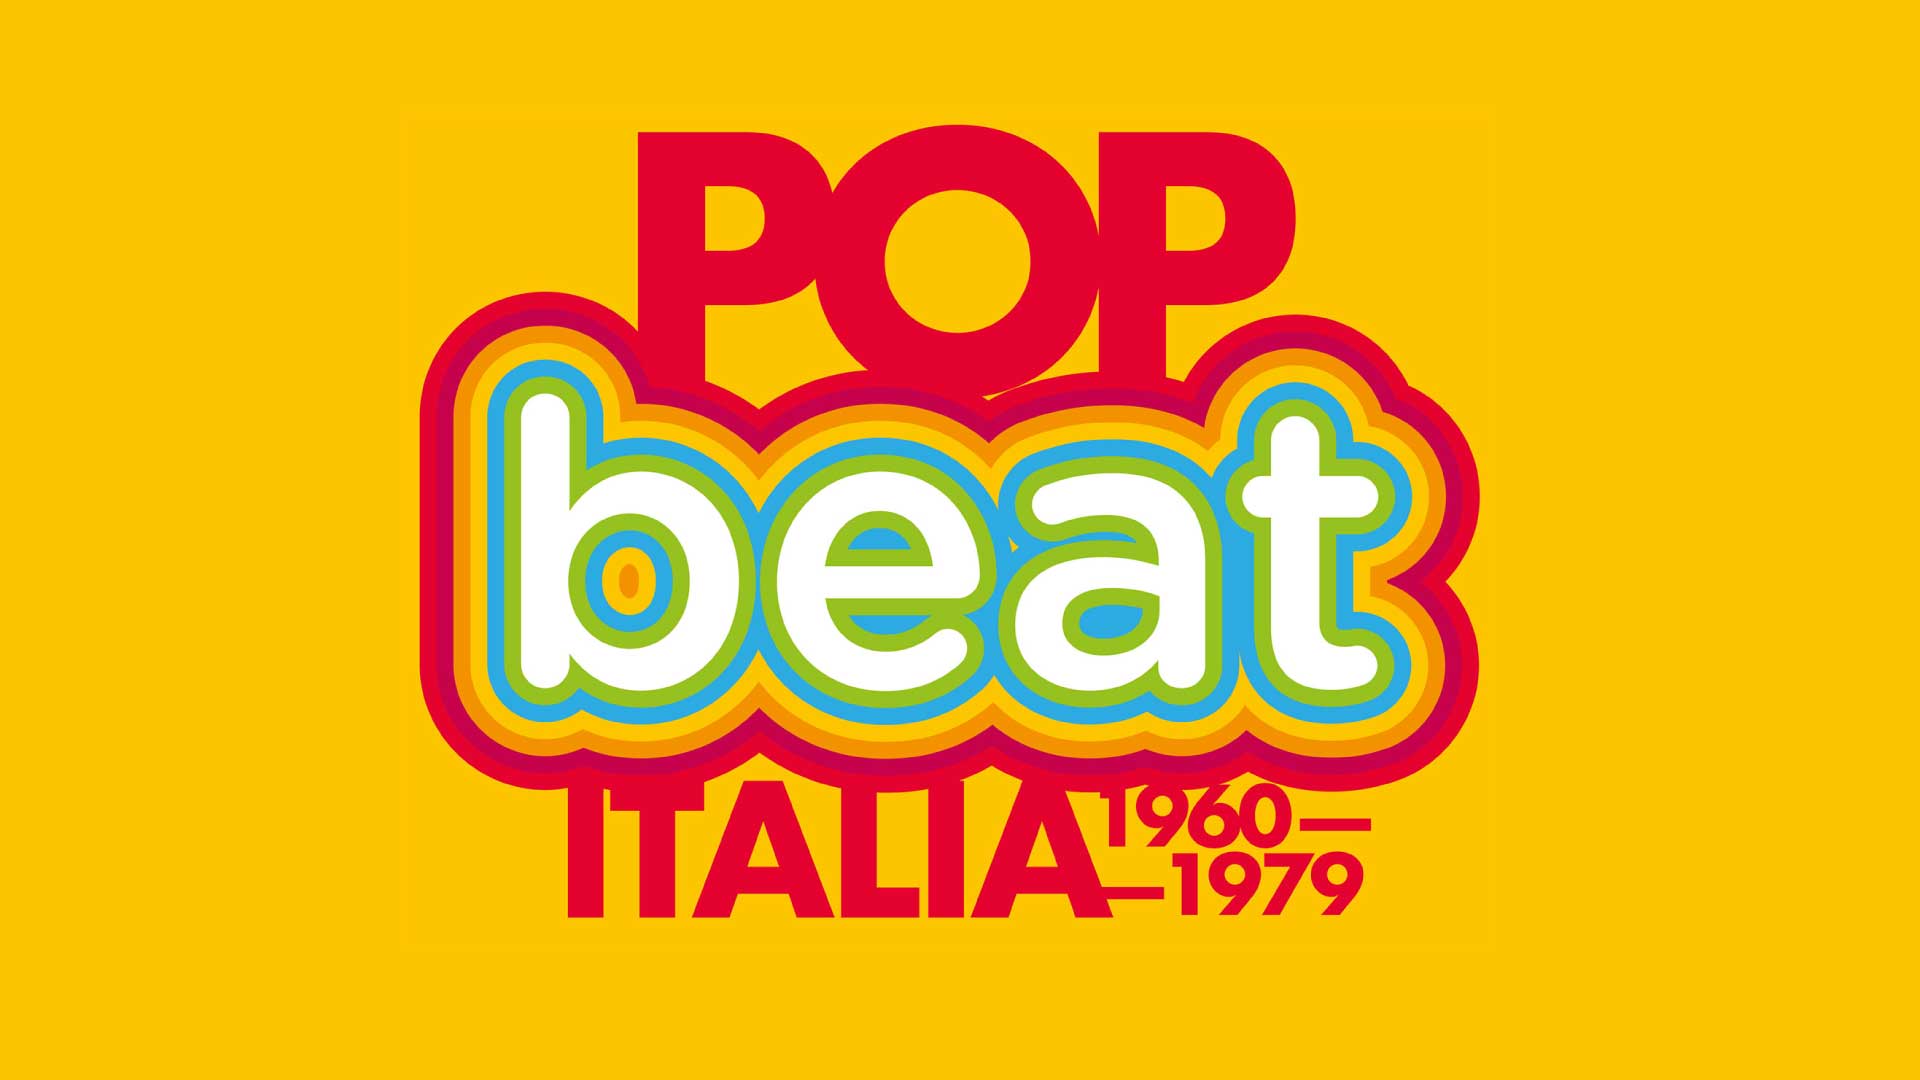 Pop Beat - Italia 1960-1979